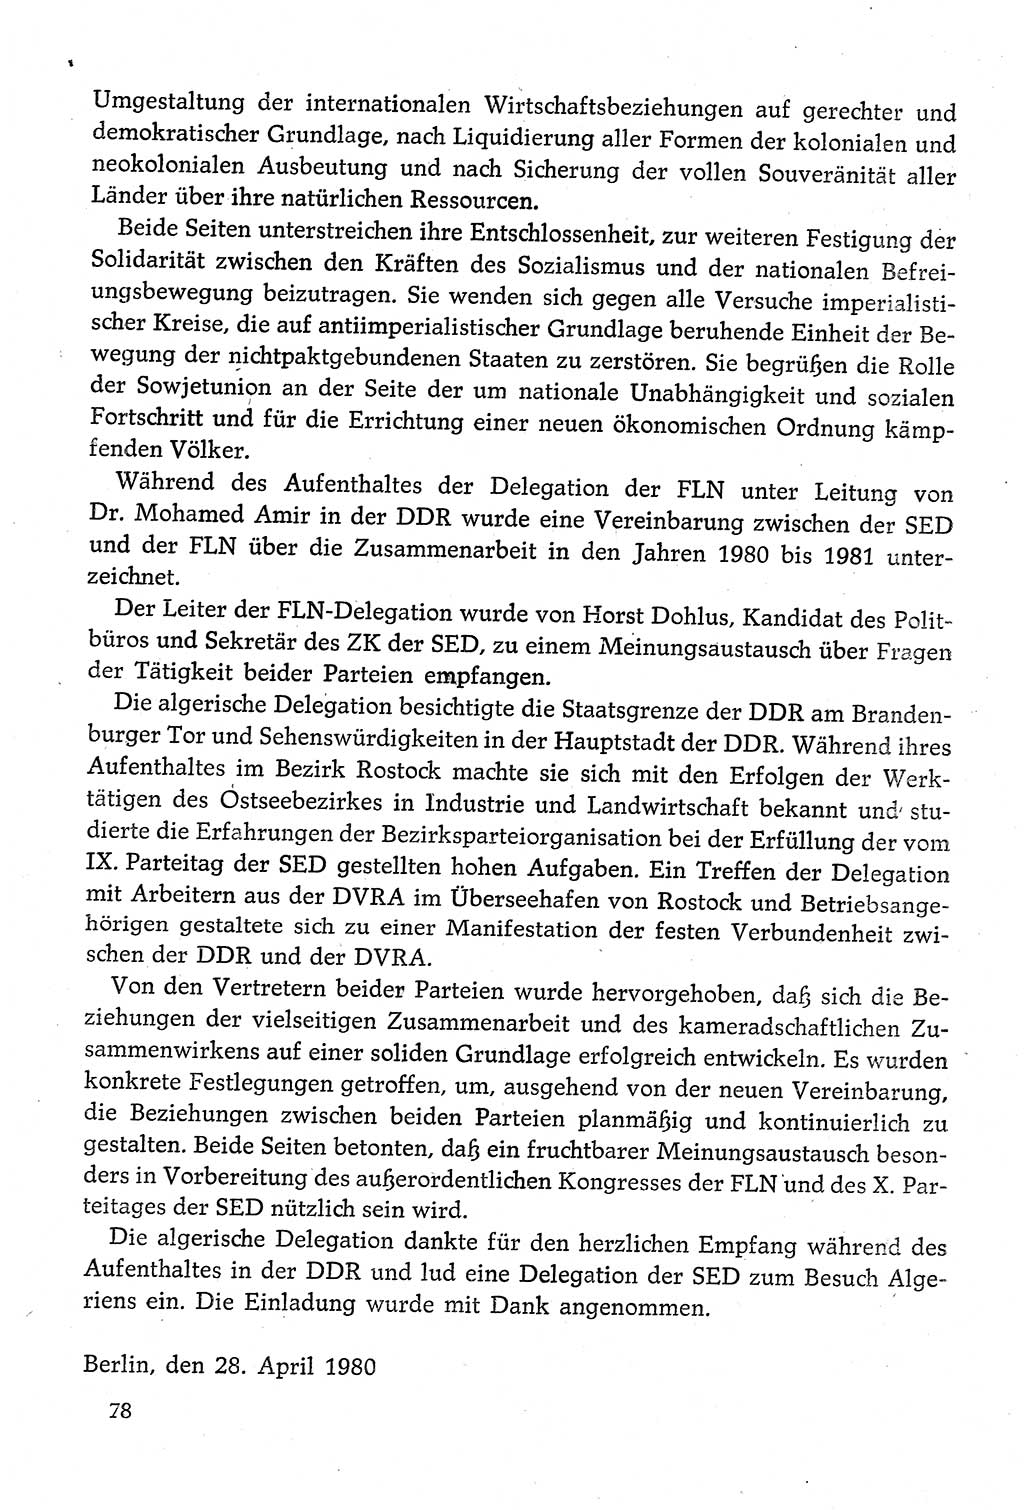 Dokumente der Sozialistischen Einheitspartei Deutschlands (SED) [Deutsche Demokratische Republik (DDR)] 1980-1981, Seite 78 (Dok. SED DDR 1980-1981, S. 78)